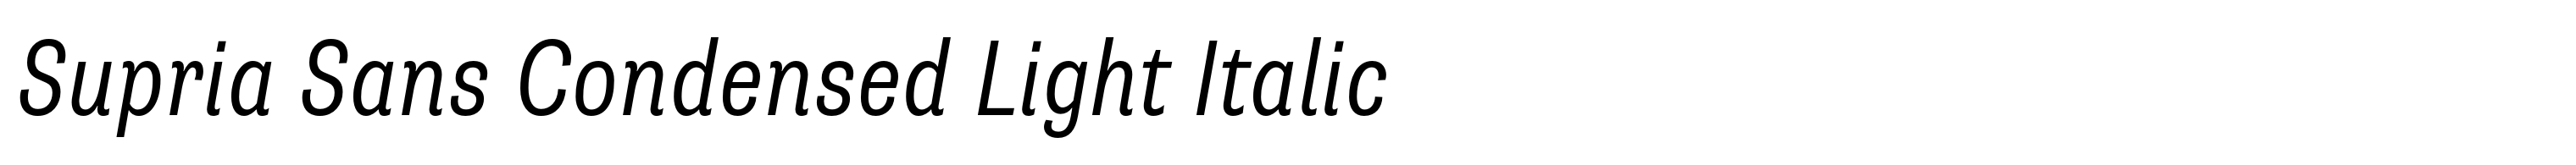 Supria Sans Condensed Light Italic